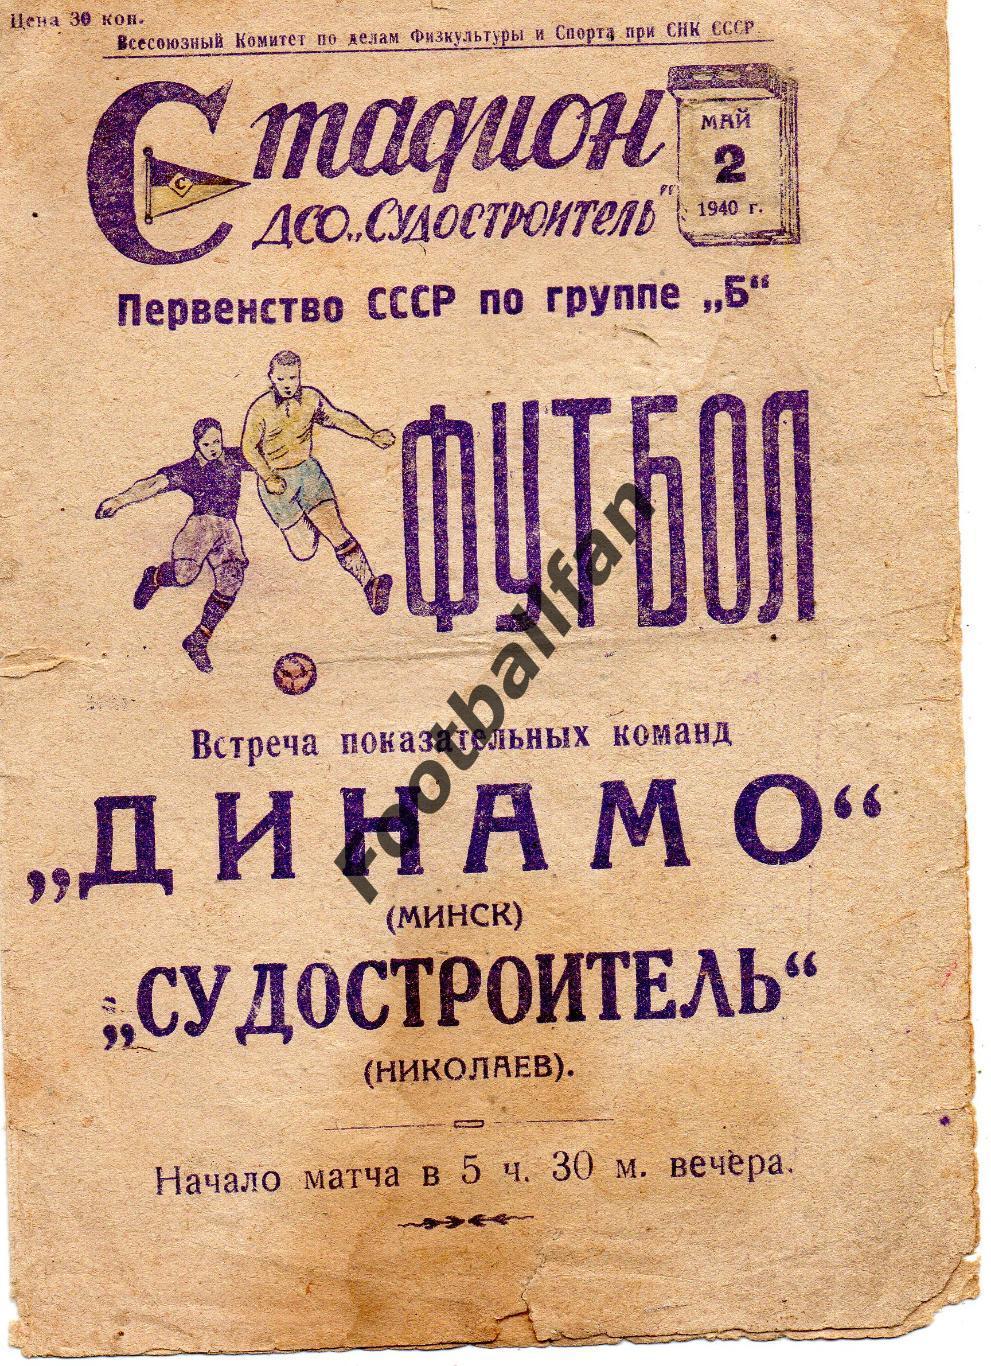 Судостроитель Николаев - Динамо Минск 02.05.1940